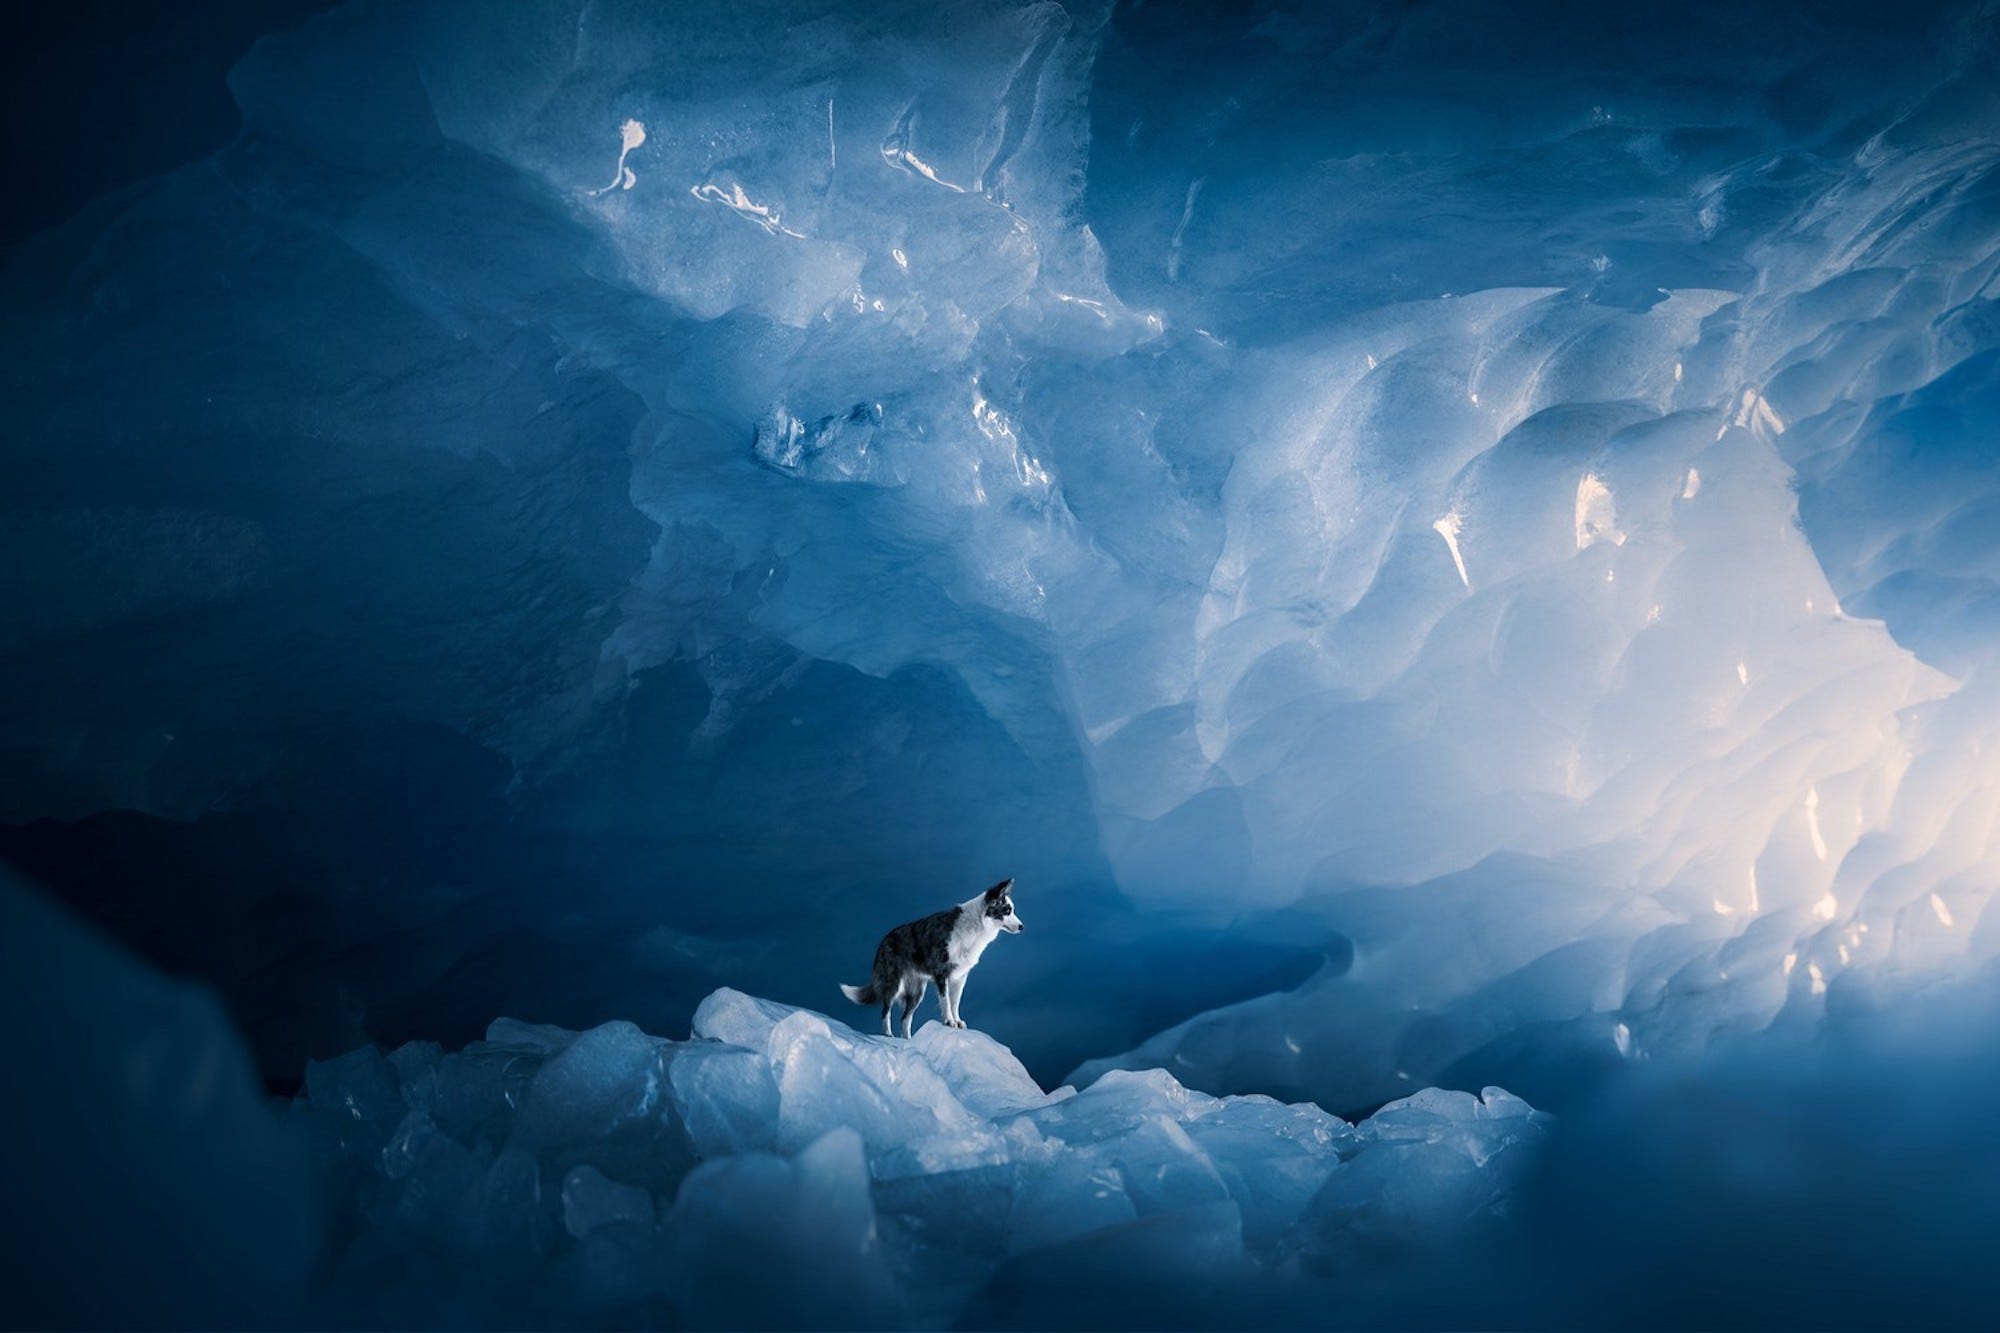 Ein schwarz-weißer Hund steht in einer blau gefärbten Eishöhle.